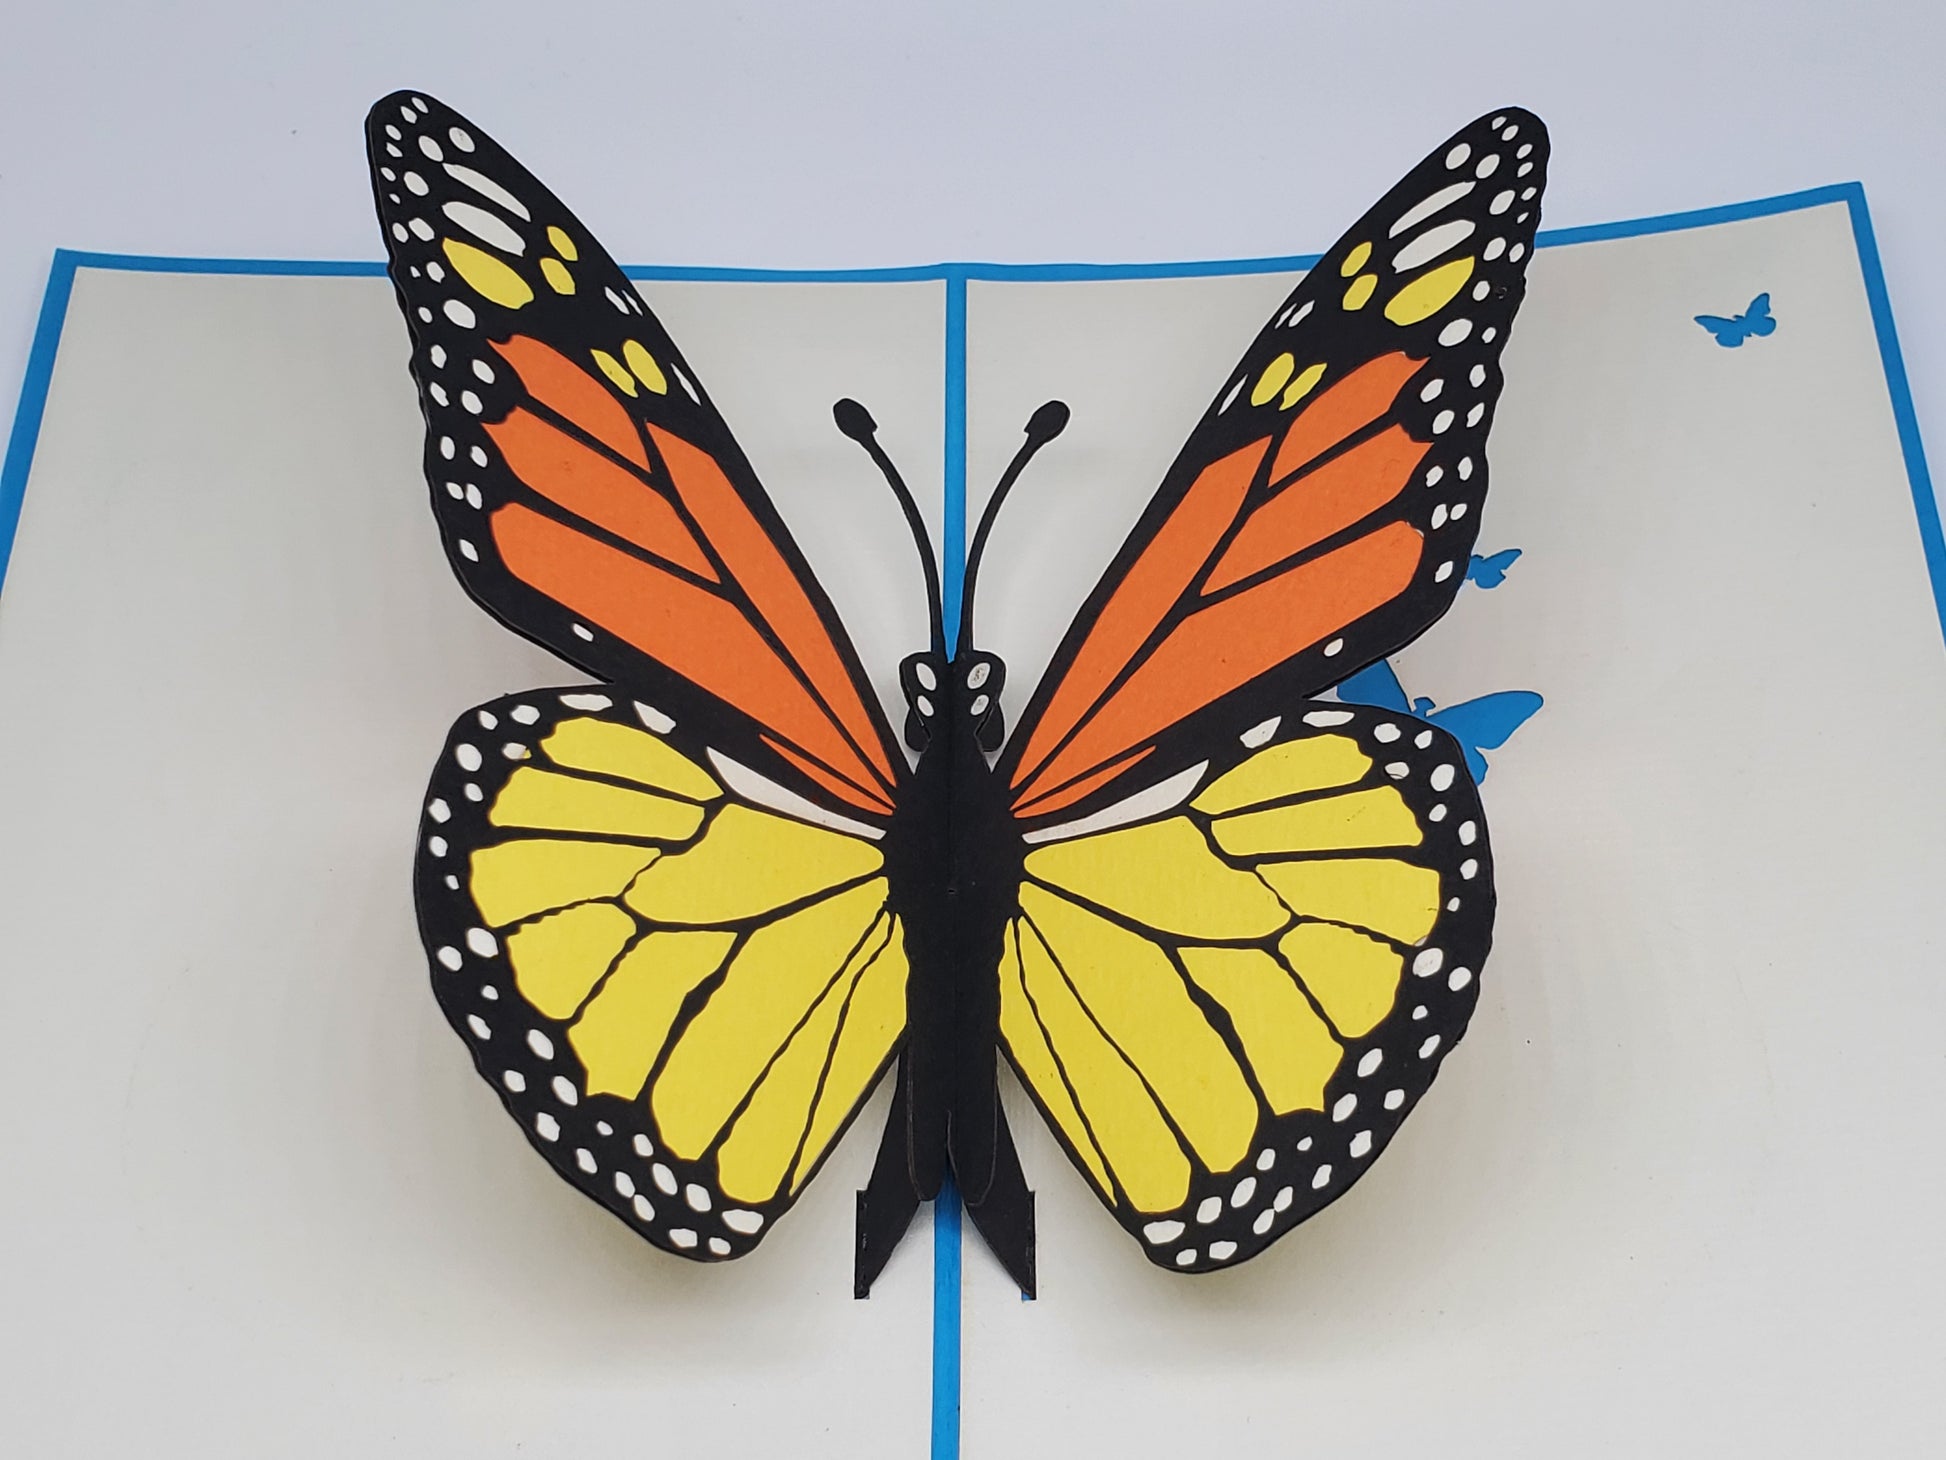 Butterfly 3D Pop Up Card